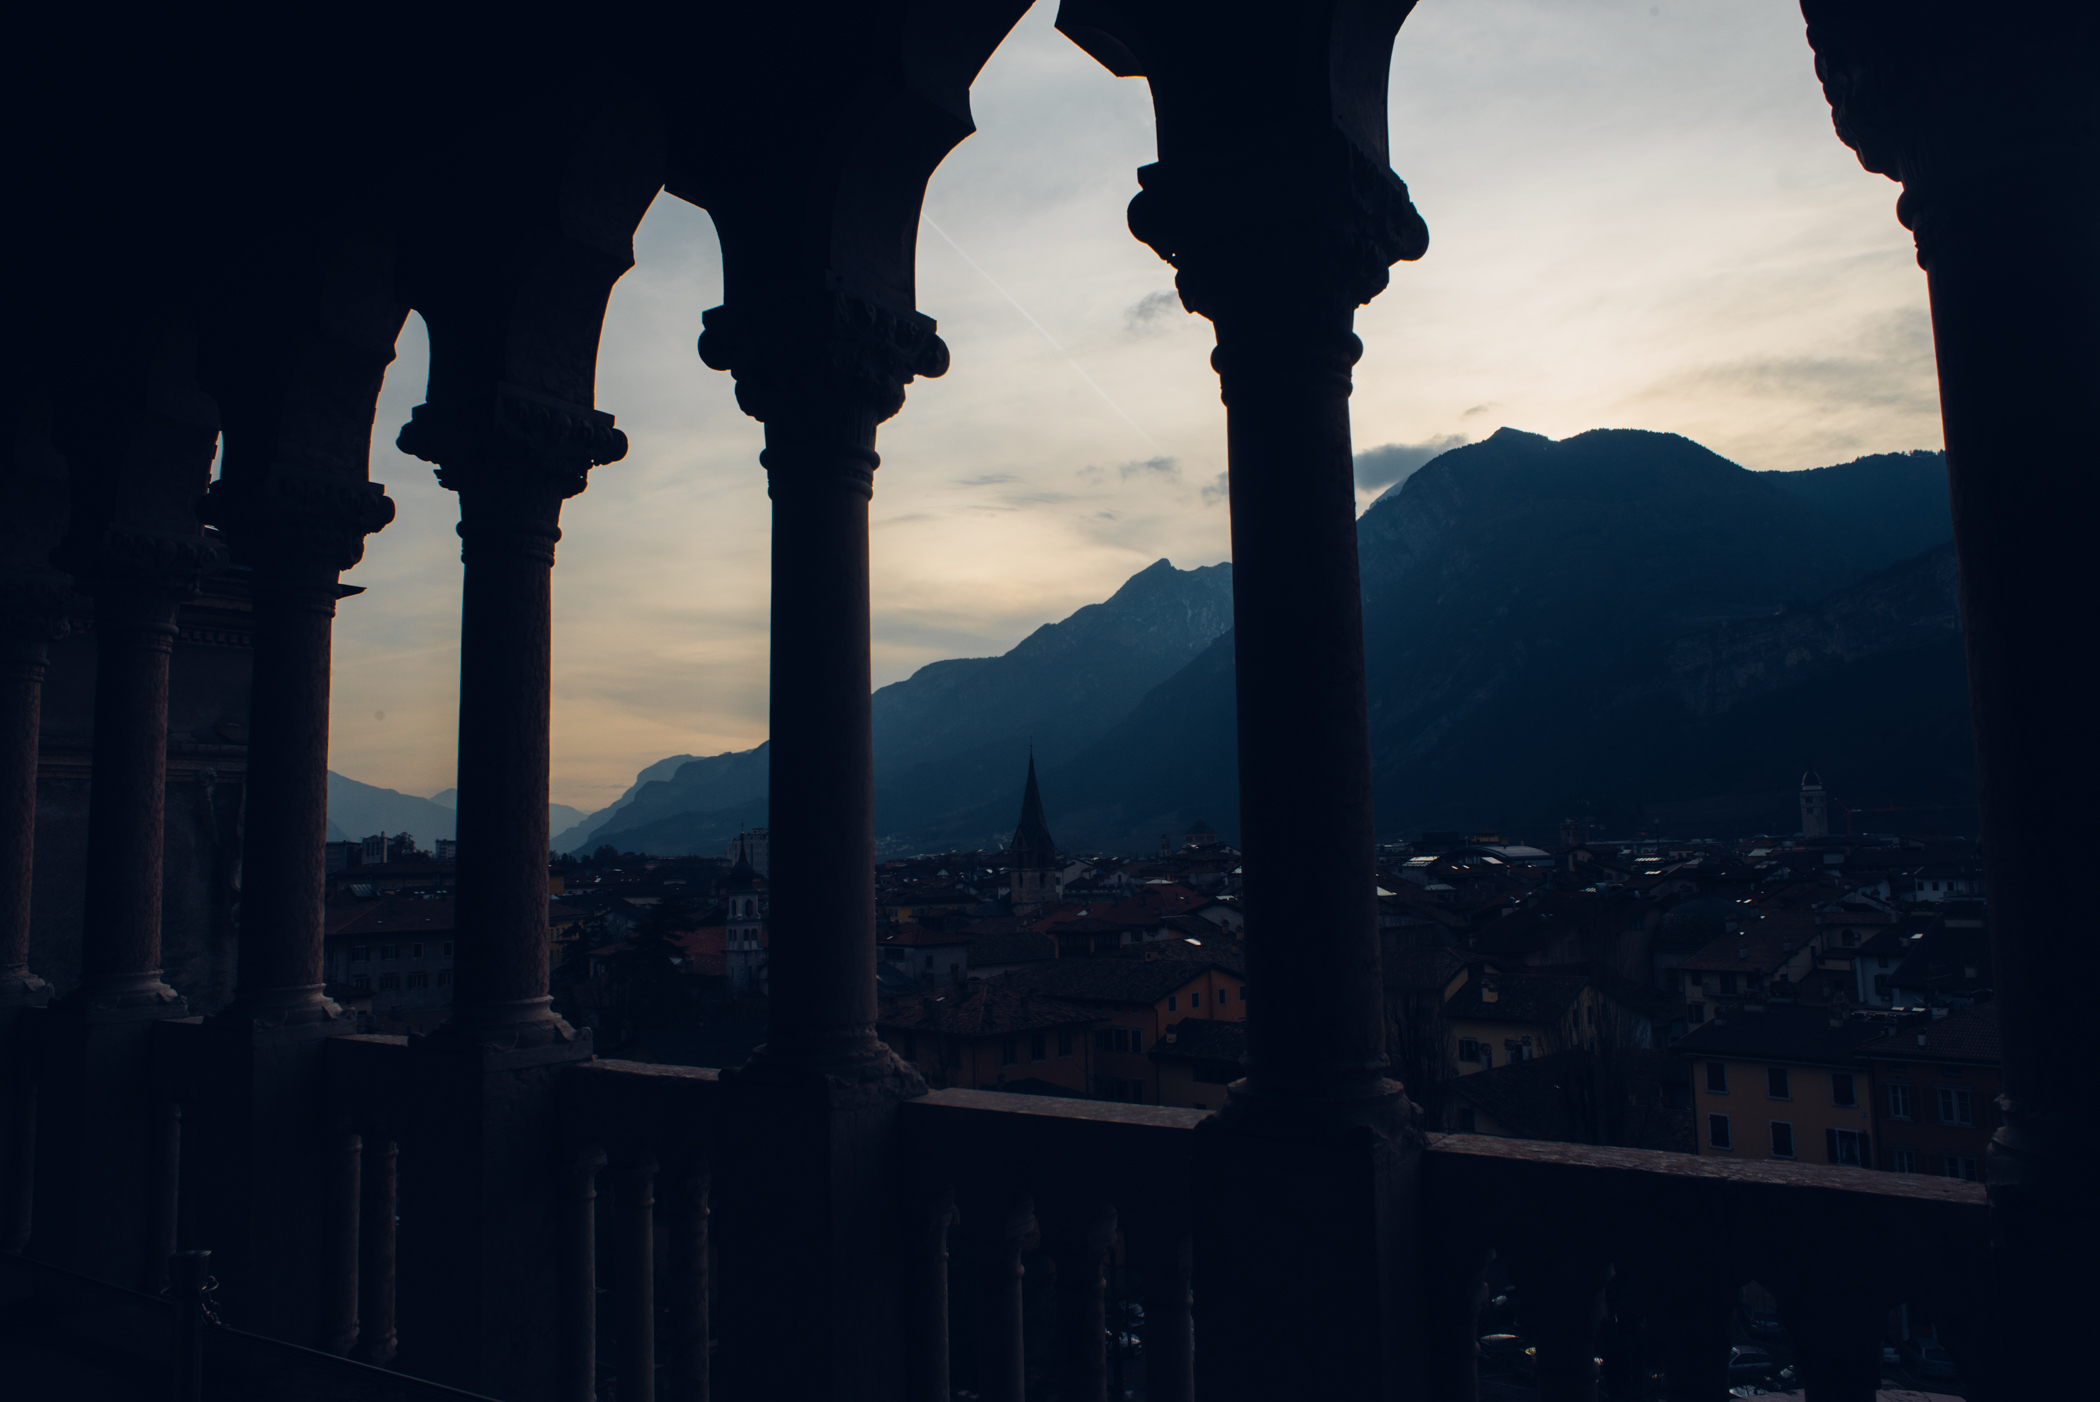 Mountain view from Castello di Bounsiglio in Trento.